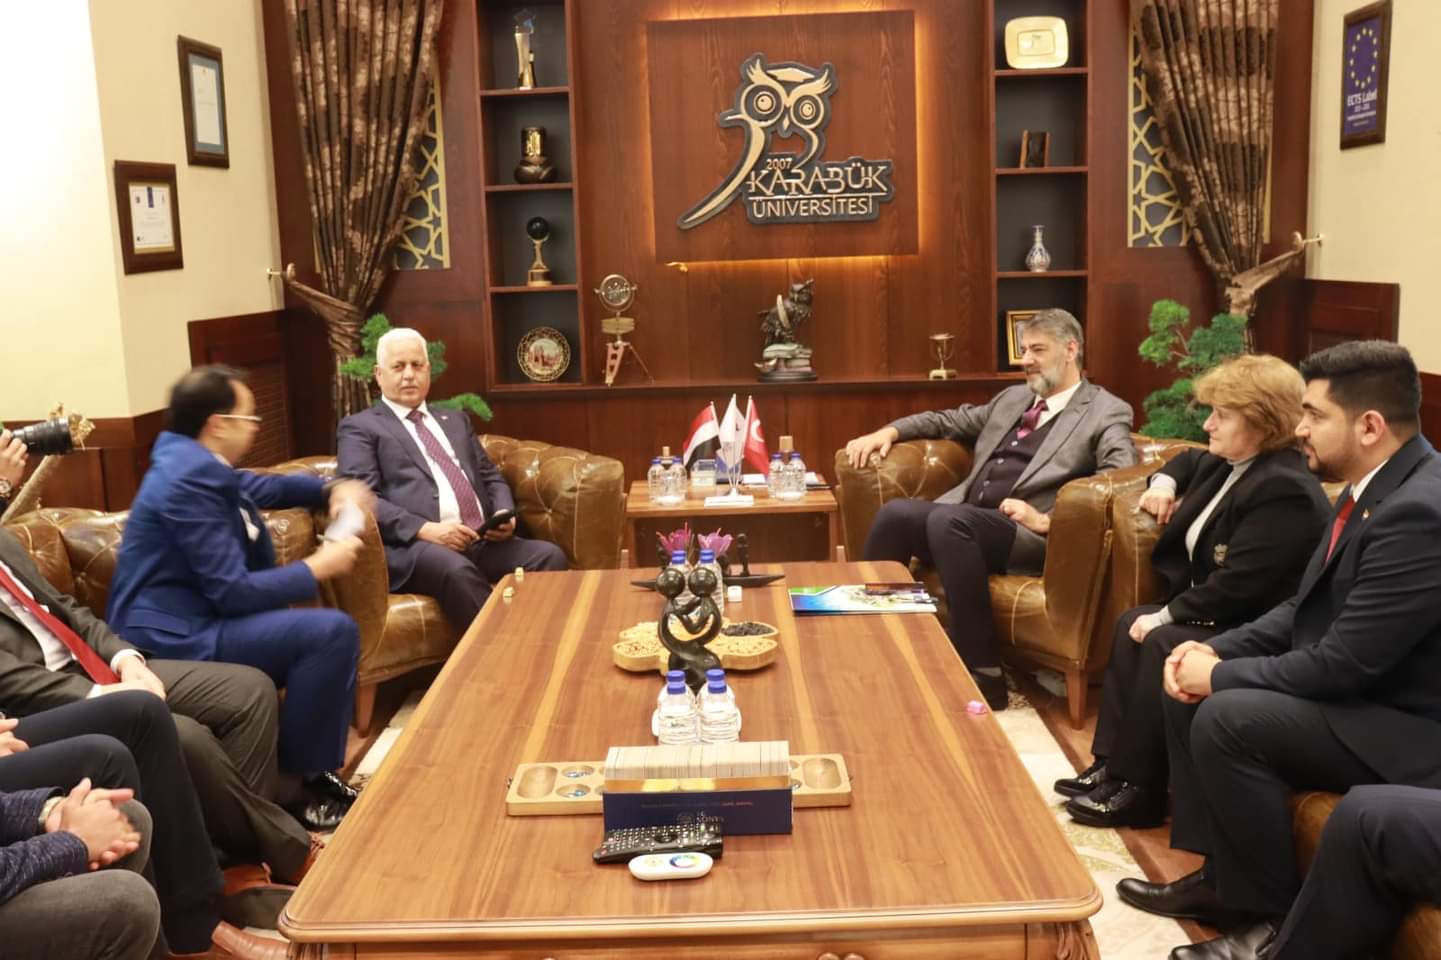 السفير طريق يلتقي رئيس جامعة كارابوك التركي